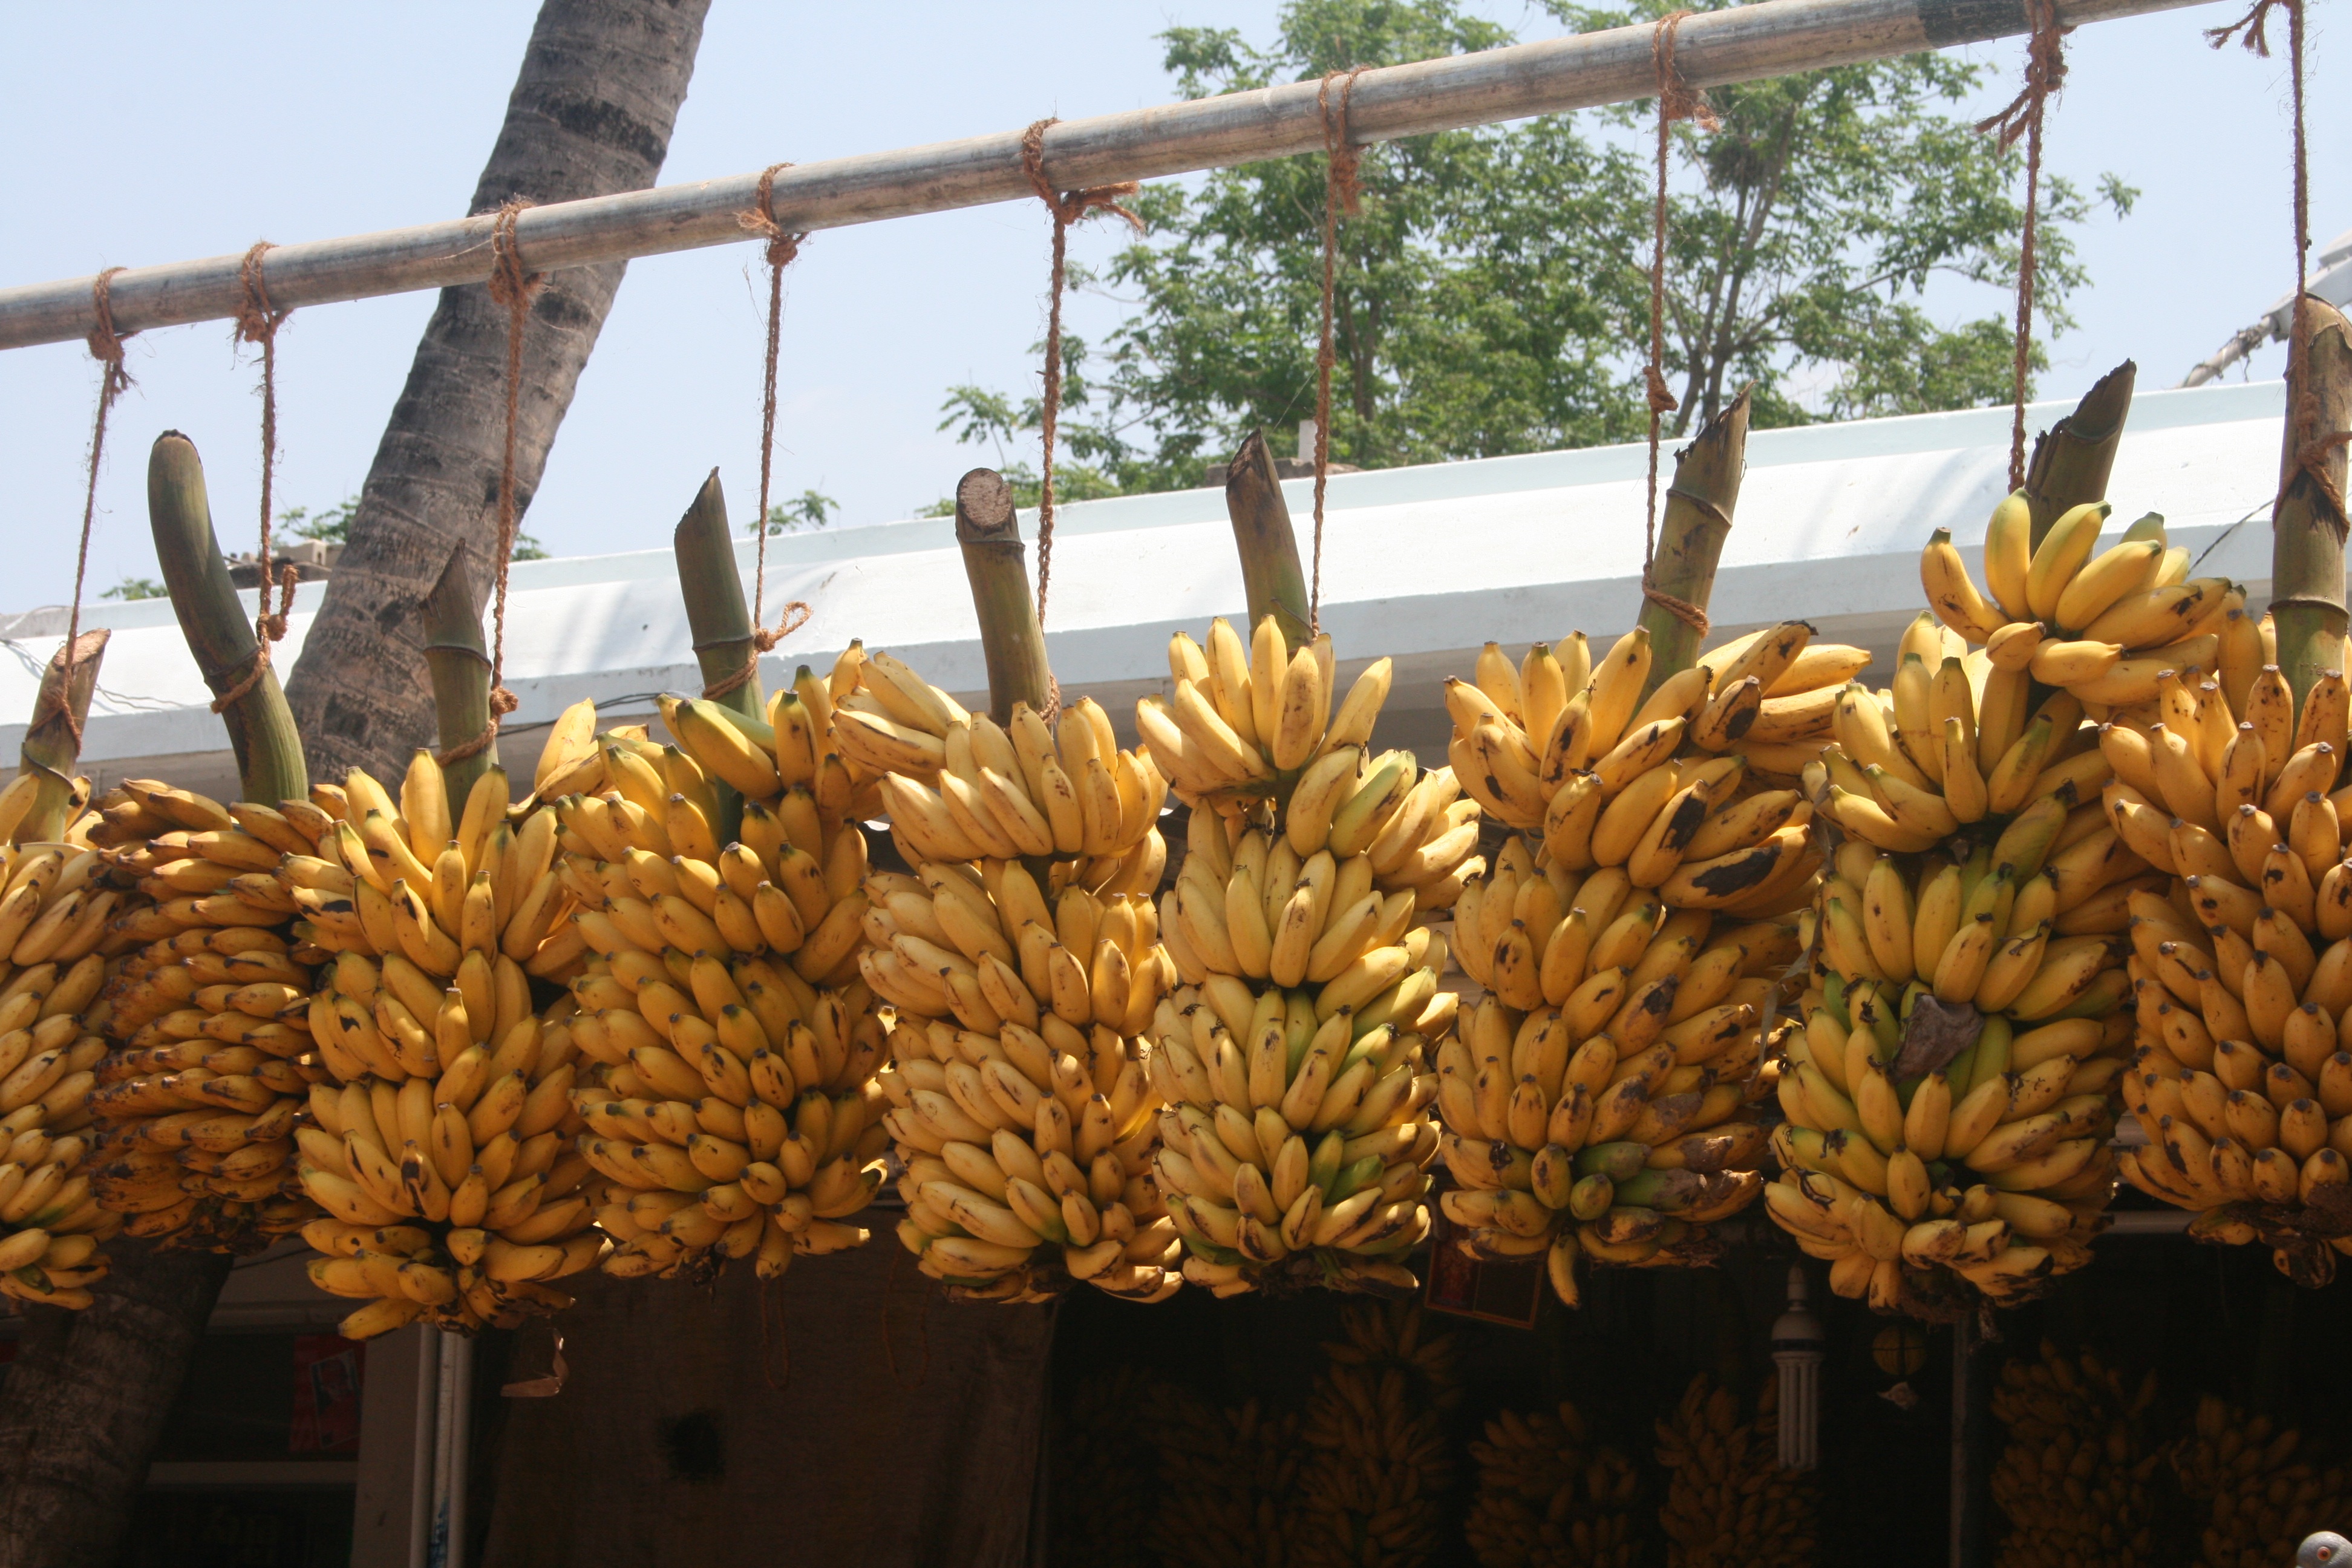 记得香蕉成熟时图片